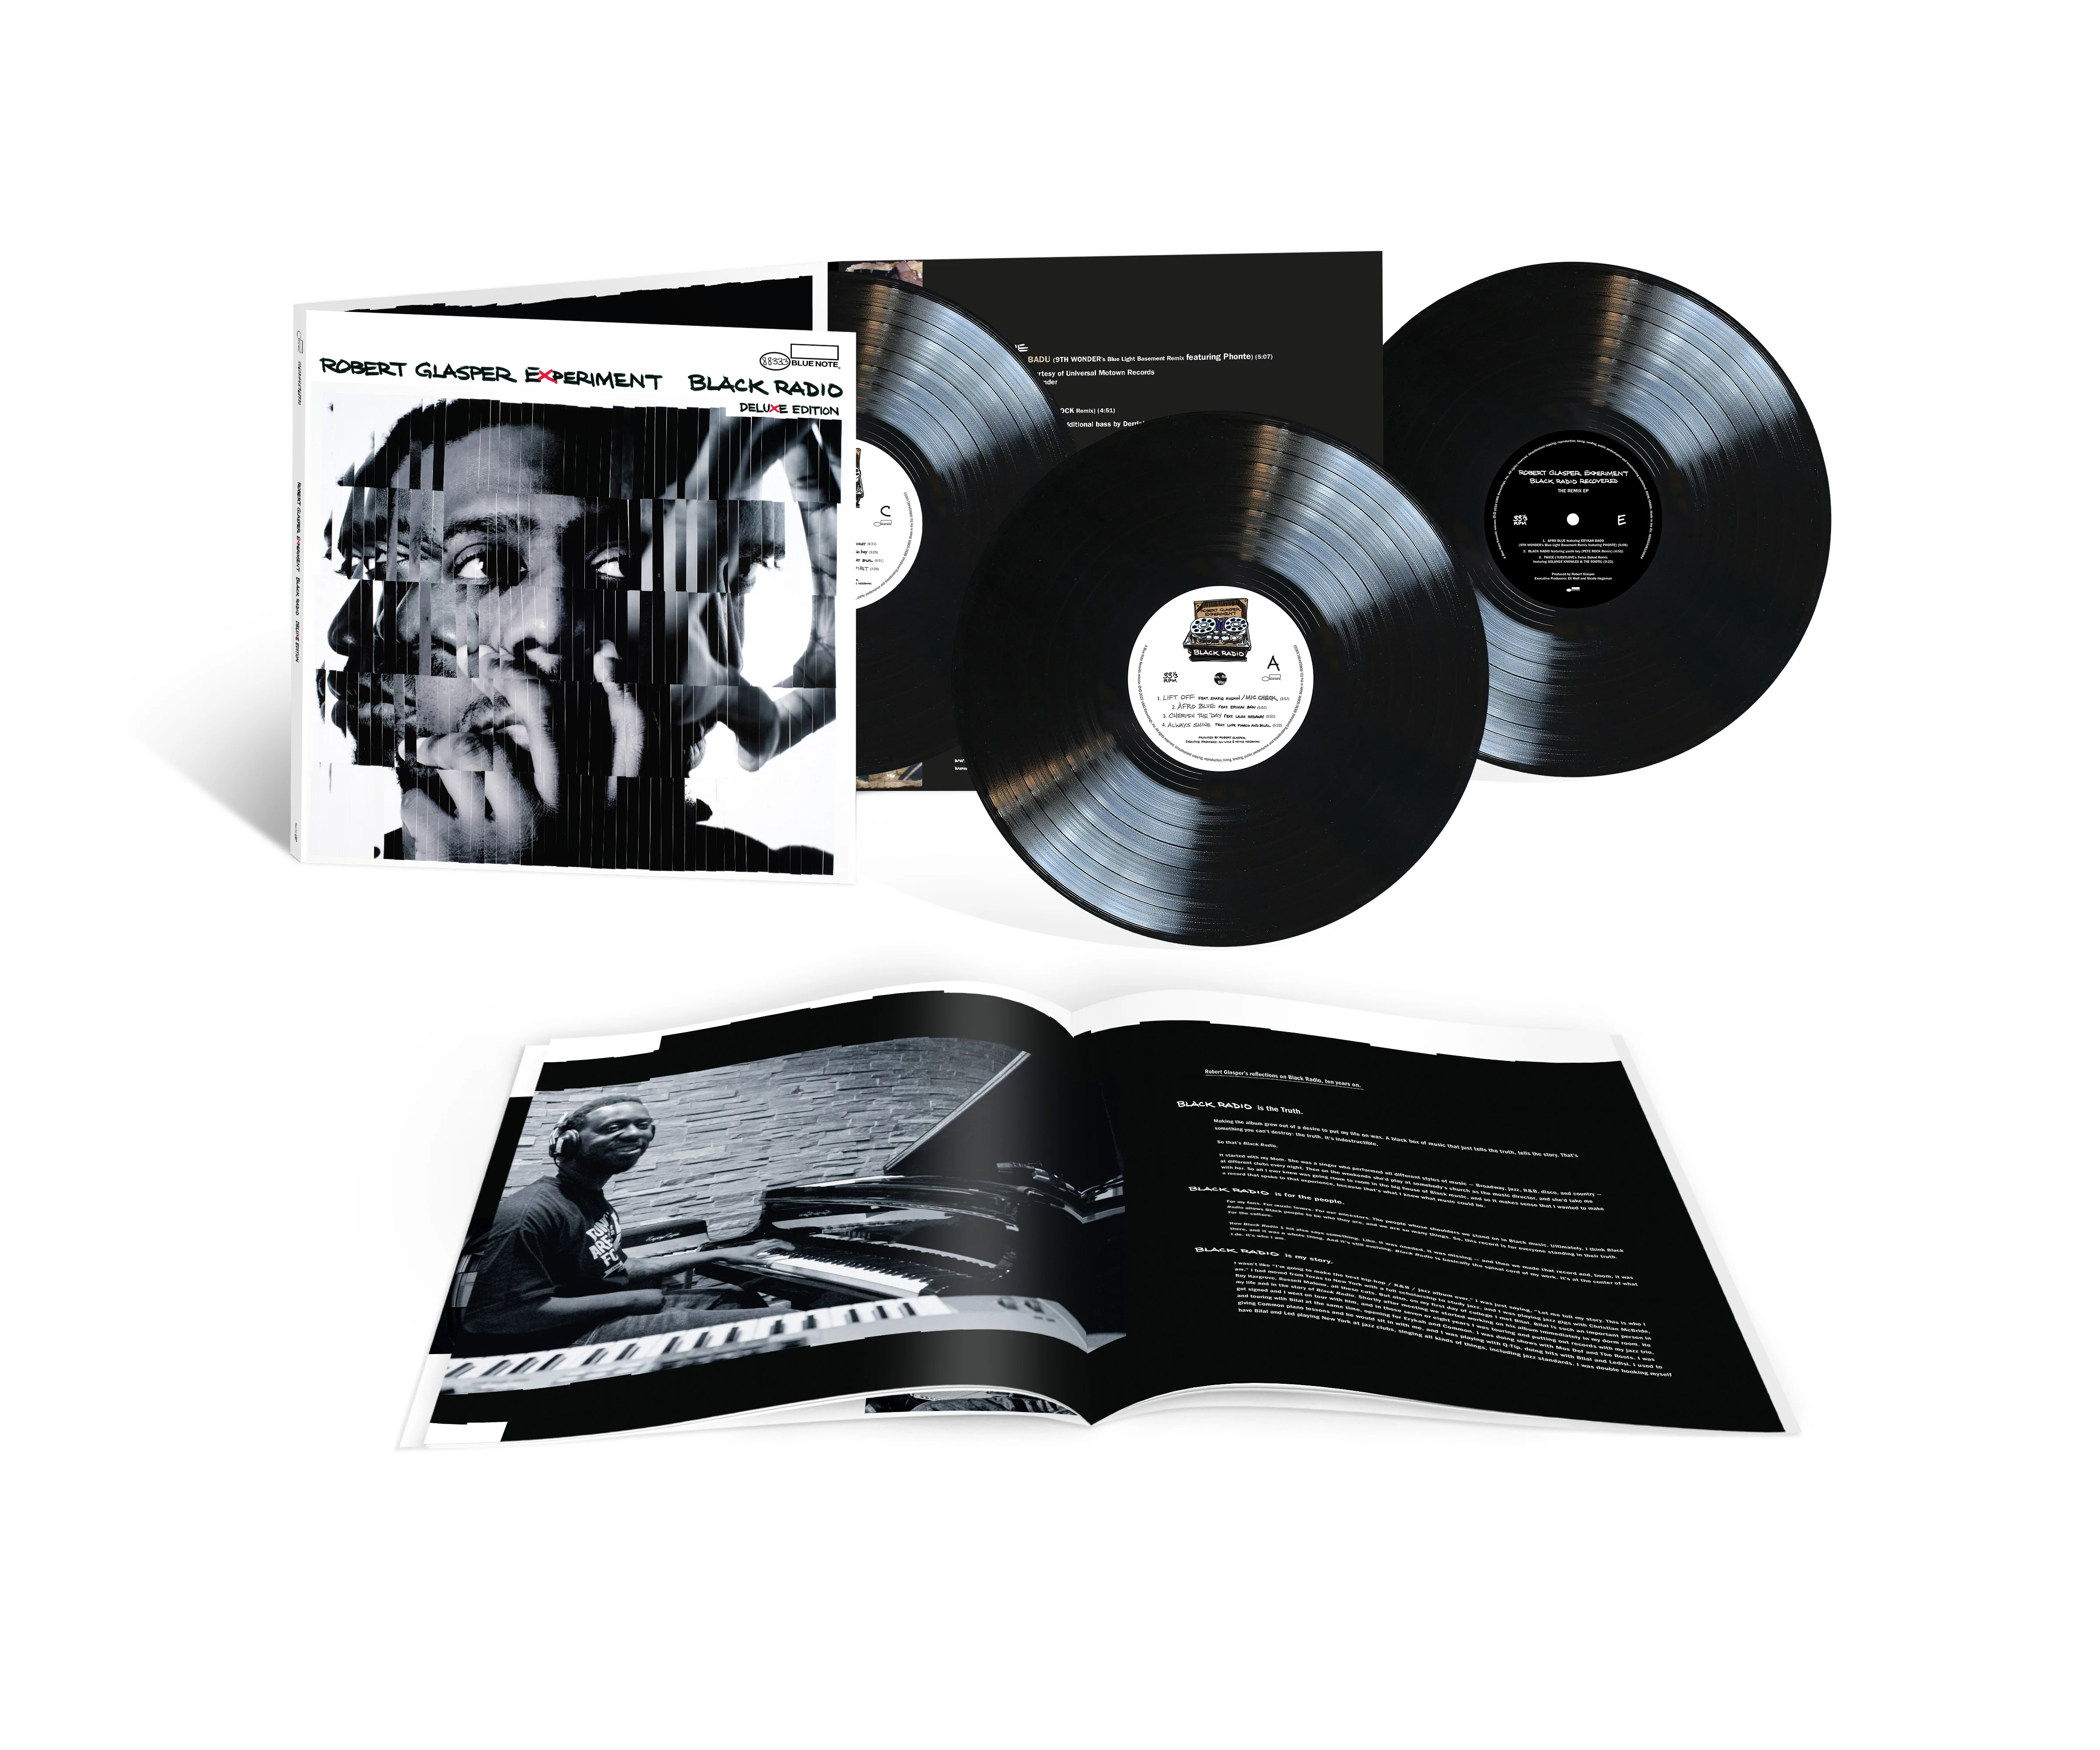 Black Radio 111 (Deluxe edition)  (pre-order due 11 November)